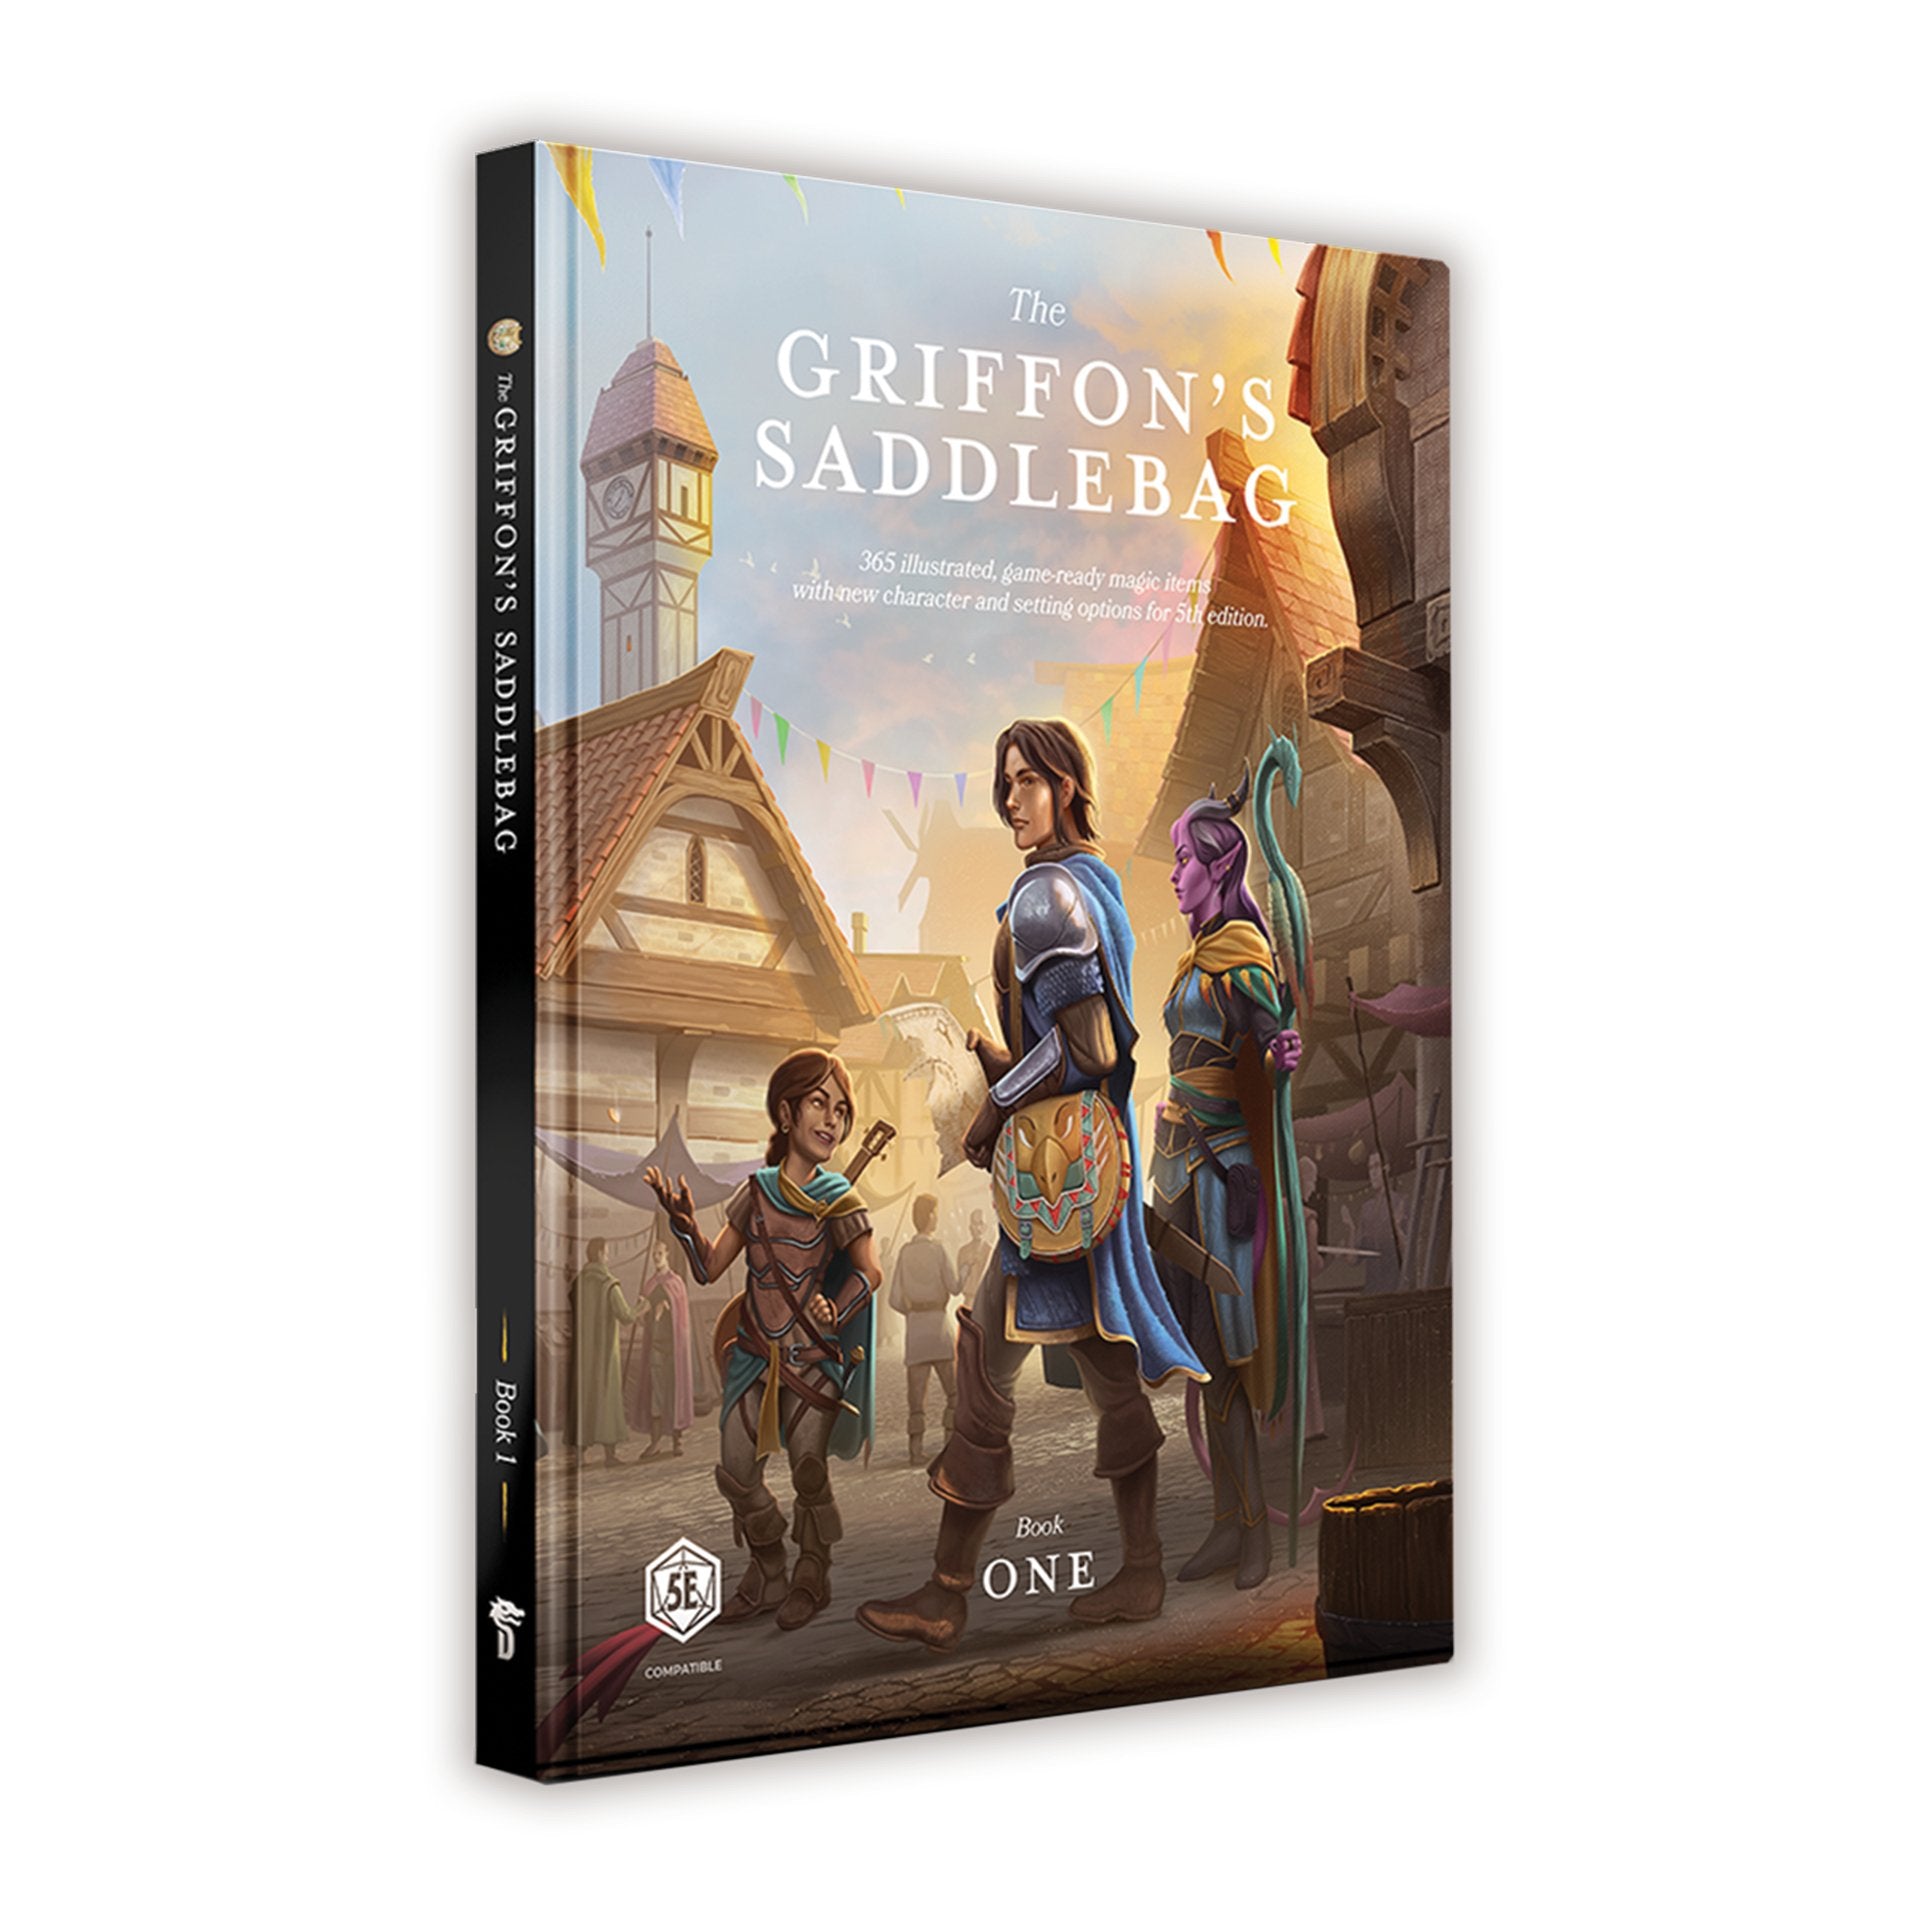 The Griffon's Saddlebag: Book One - Tabletop Bookshelf